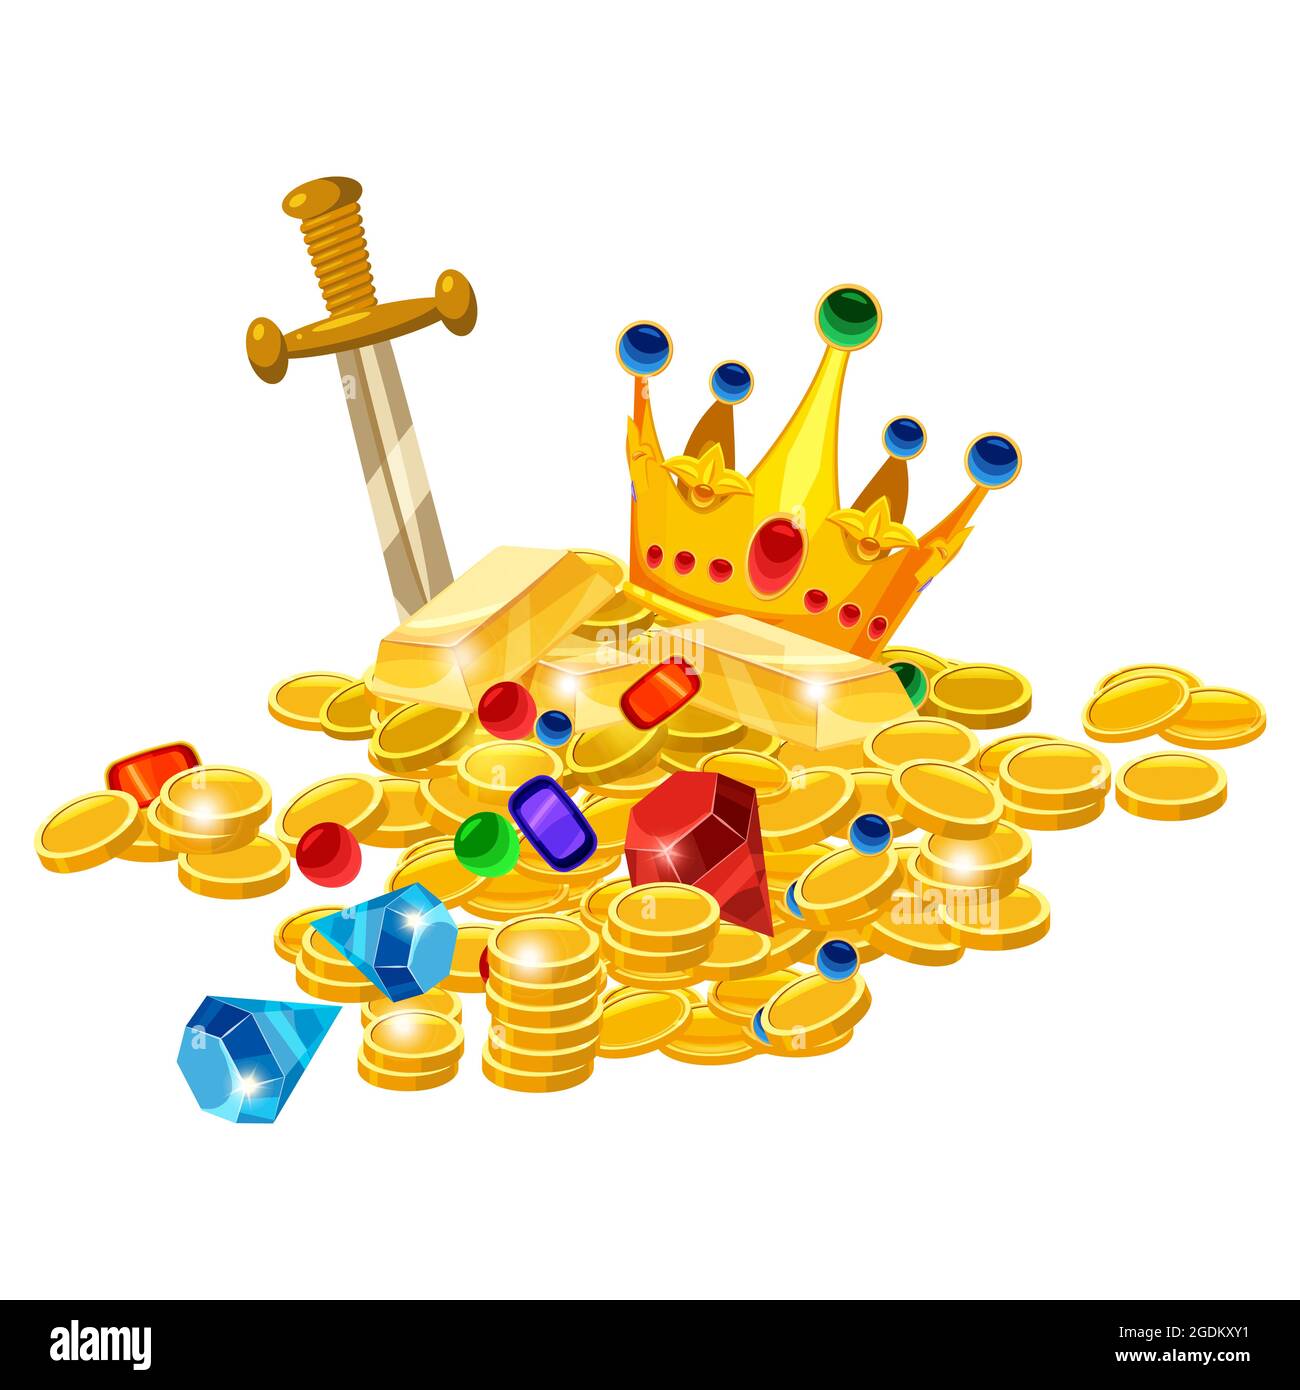 Conjunto de monedas de oro del tesoro, corona, gemas, espada, jevels,  diamantes. Lujo de oro de pila de fantasía antigua. Estilo de dibujo  animado vectorial para la ilustración de aplicaciones de juegos